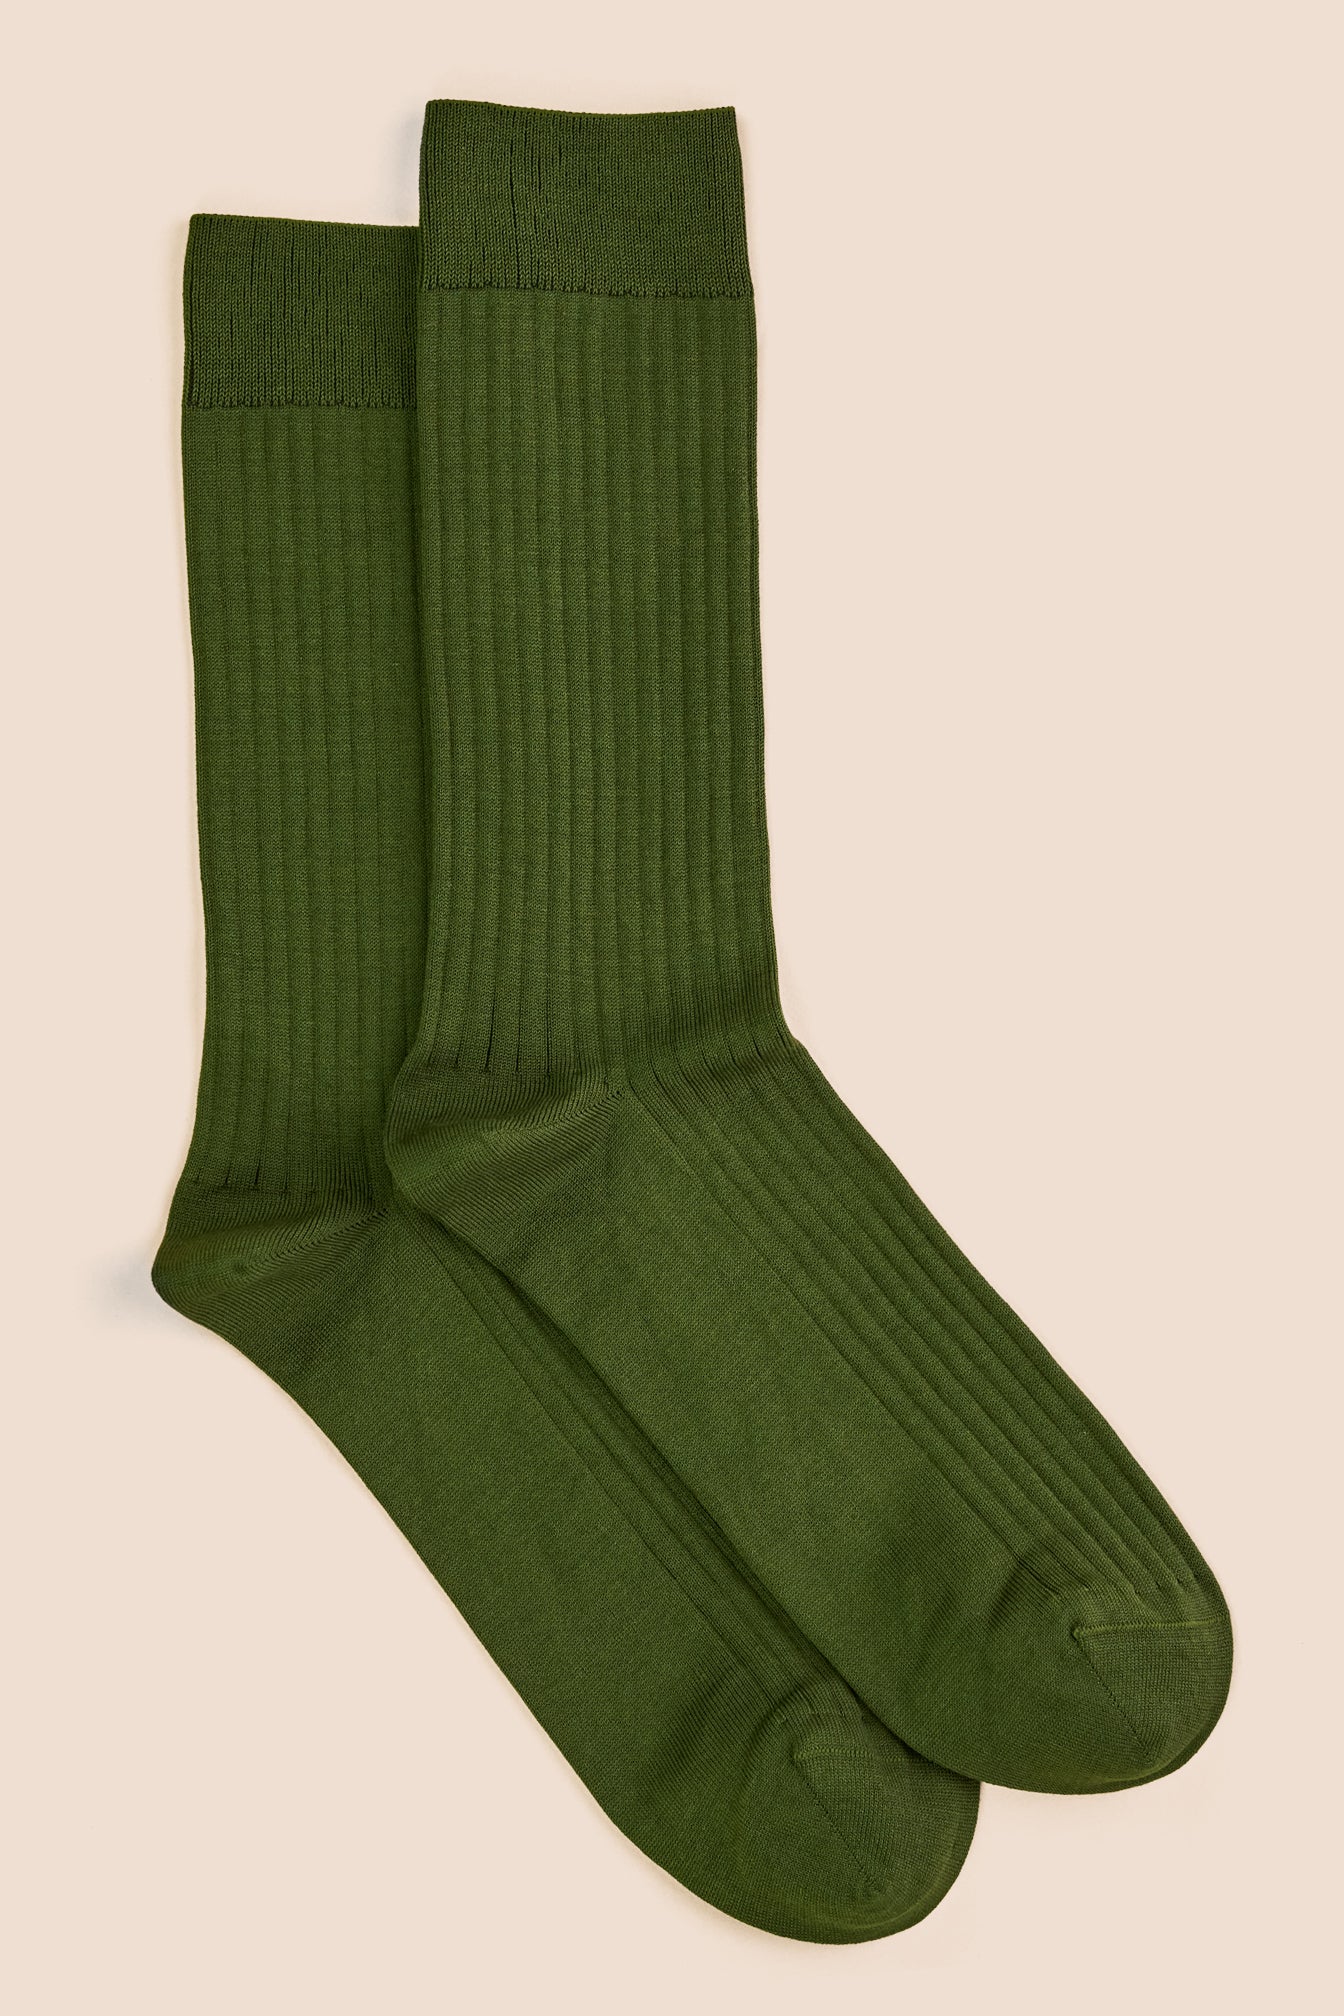 Pétrone chaussettes côtelées mi-mollet en fil d'Ecosse italien vert kaki hommes